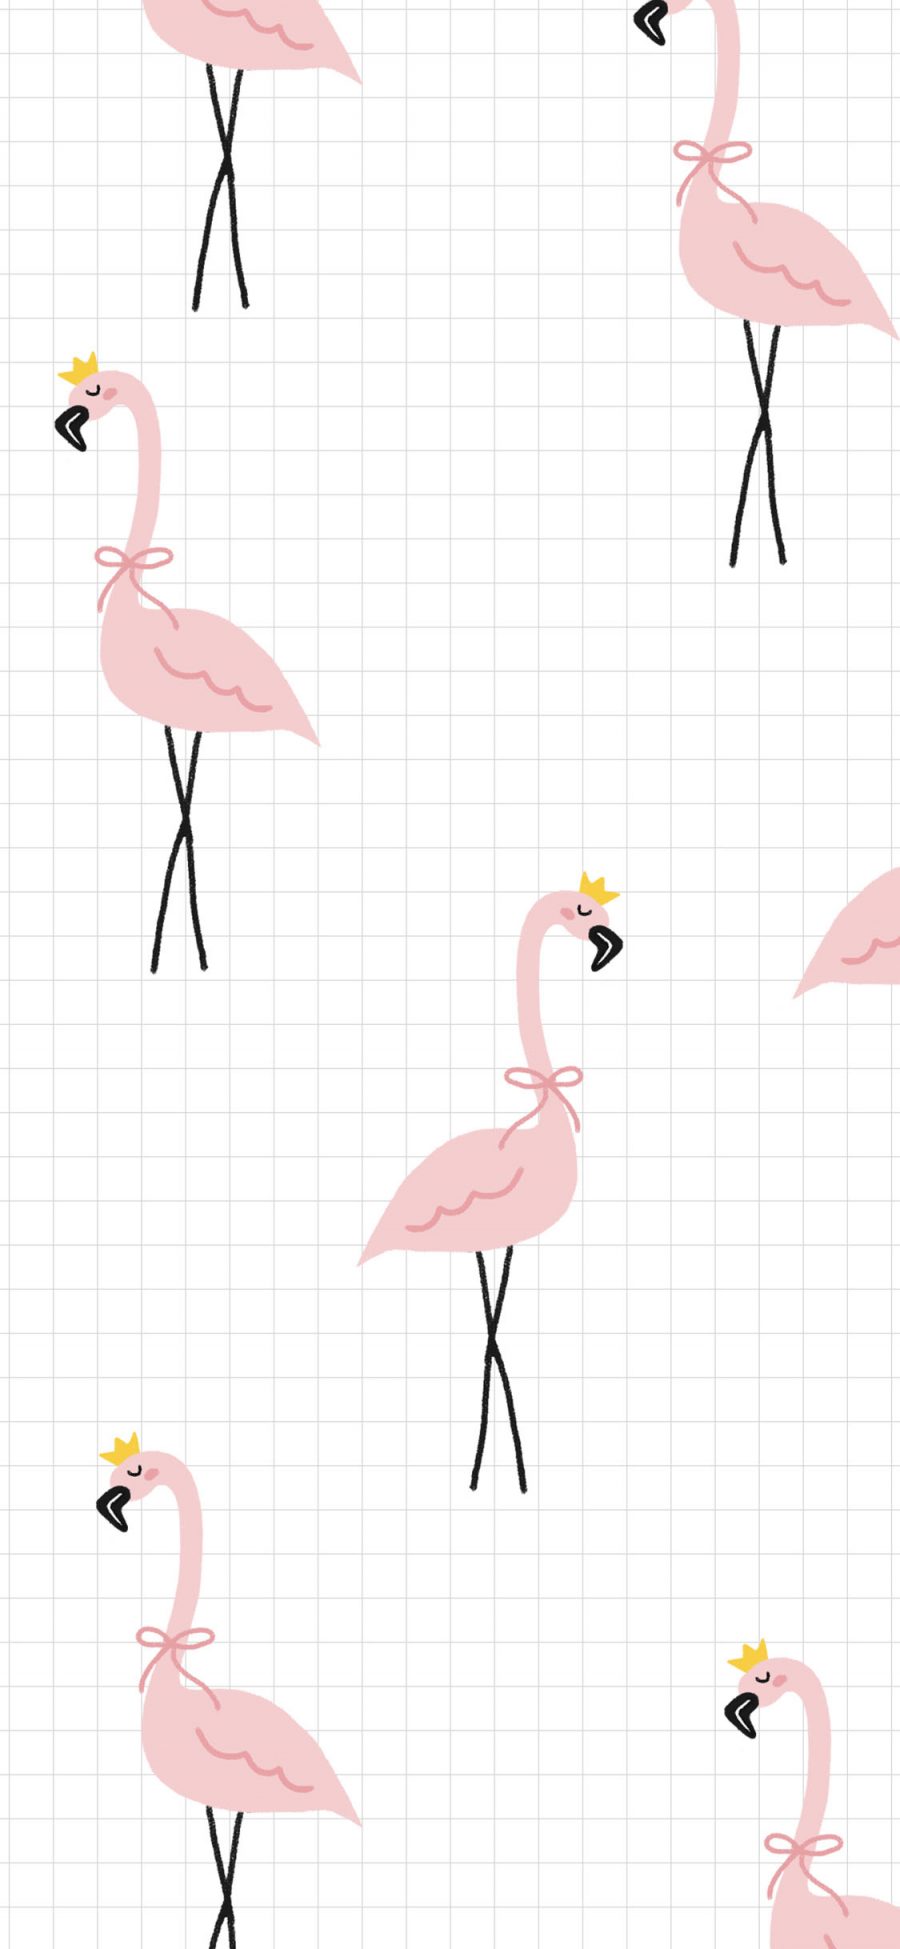 [2436×1125]格子背景 粉色火烈鸟 平铺 卡通 苹果手机动漫壁纸图片